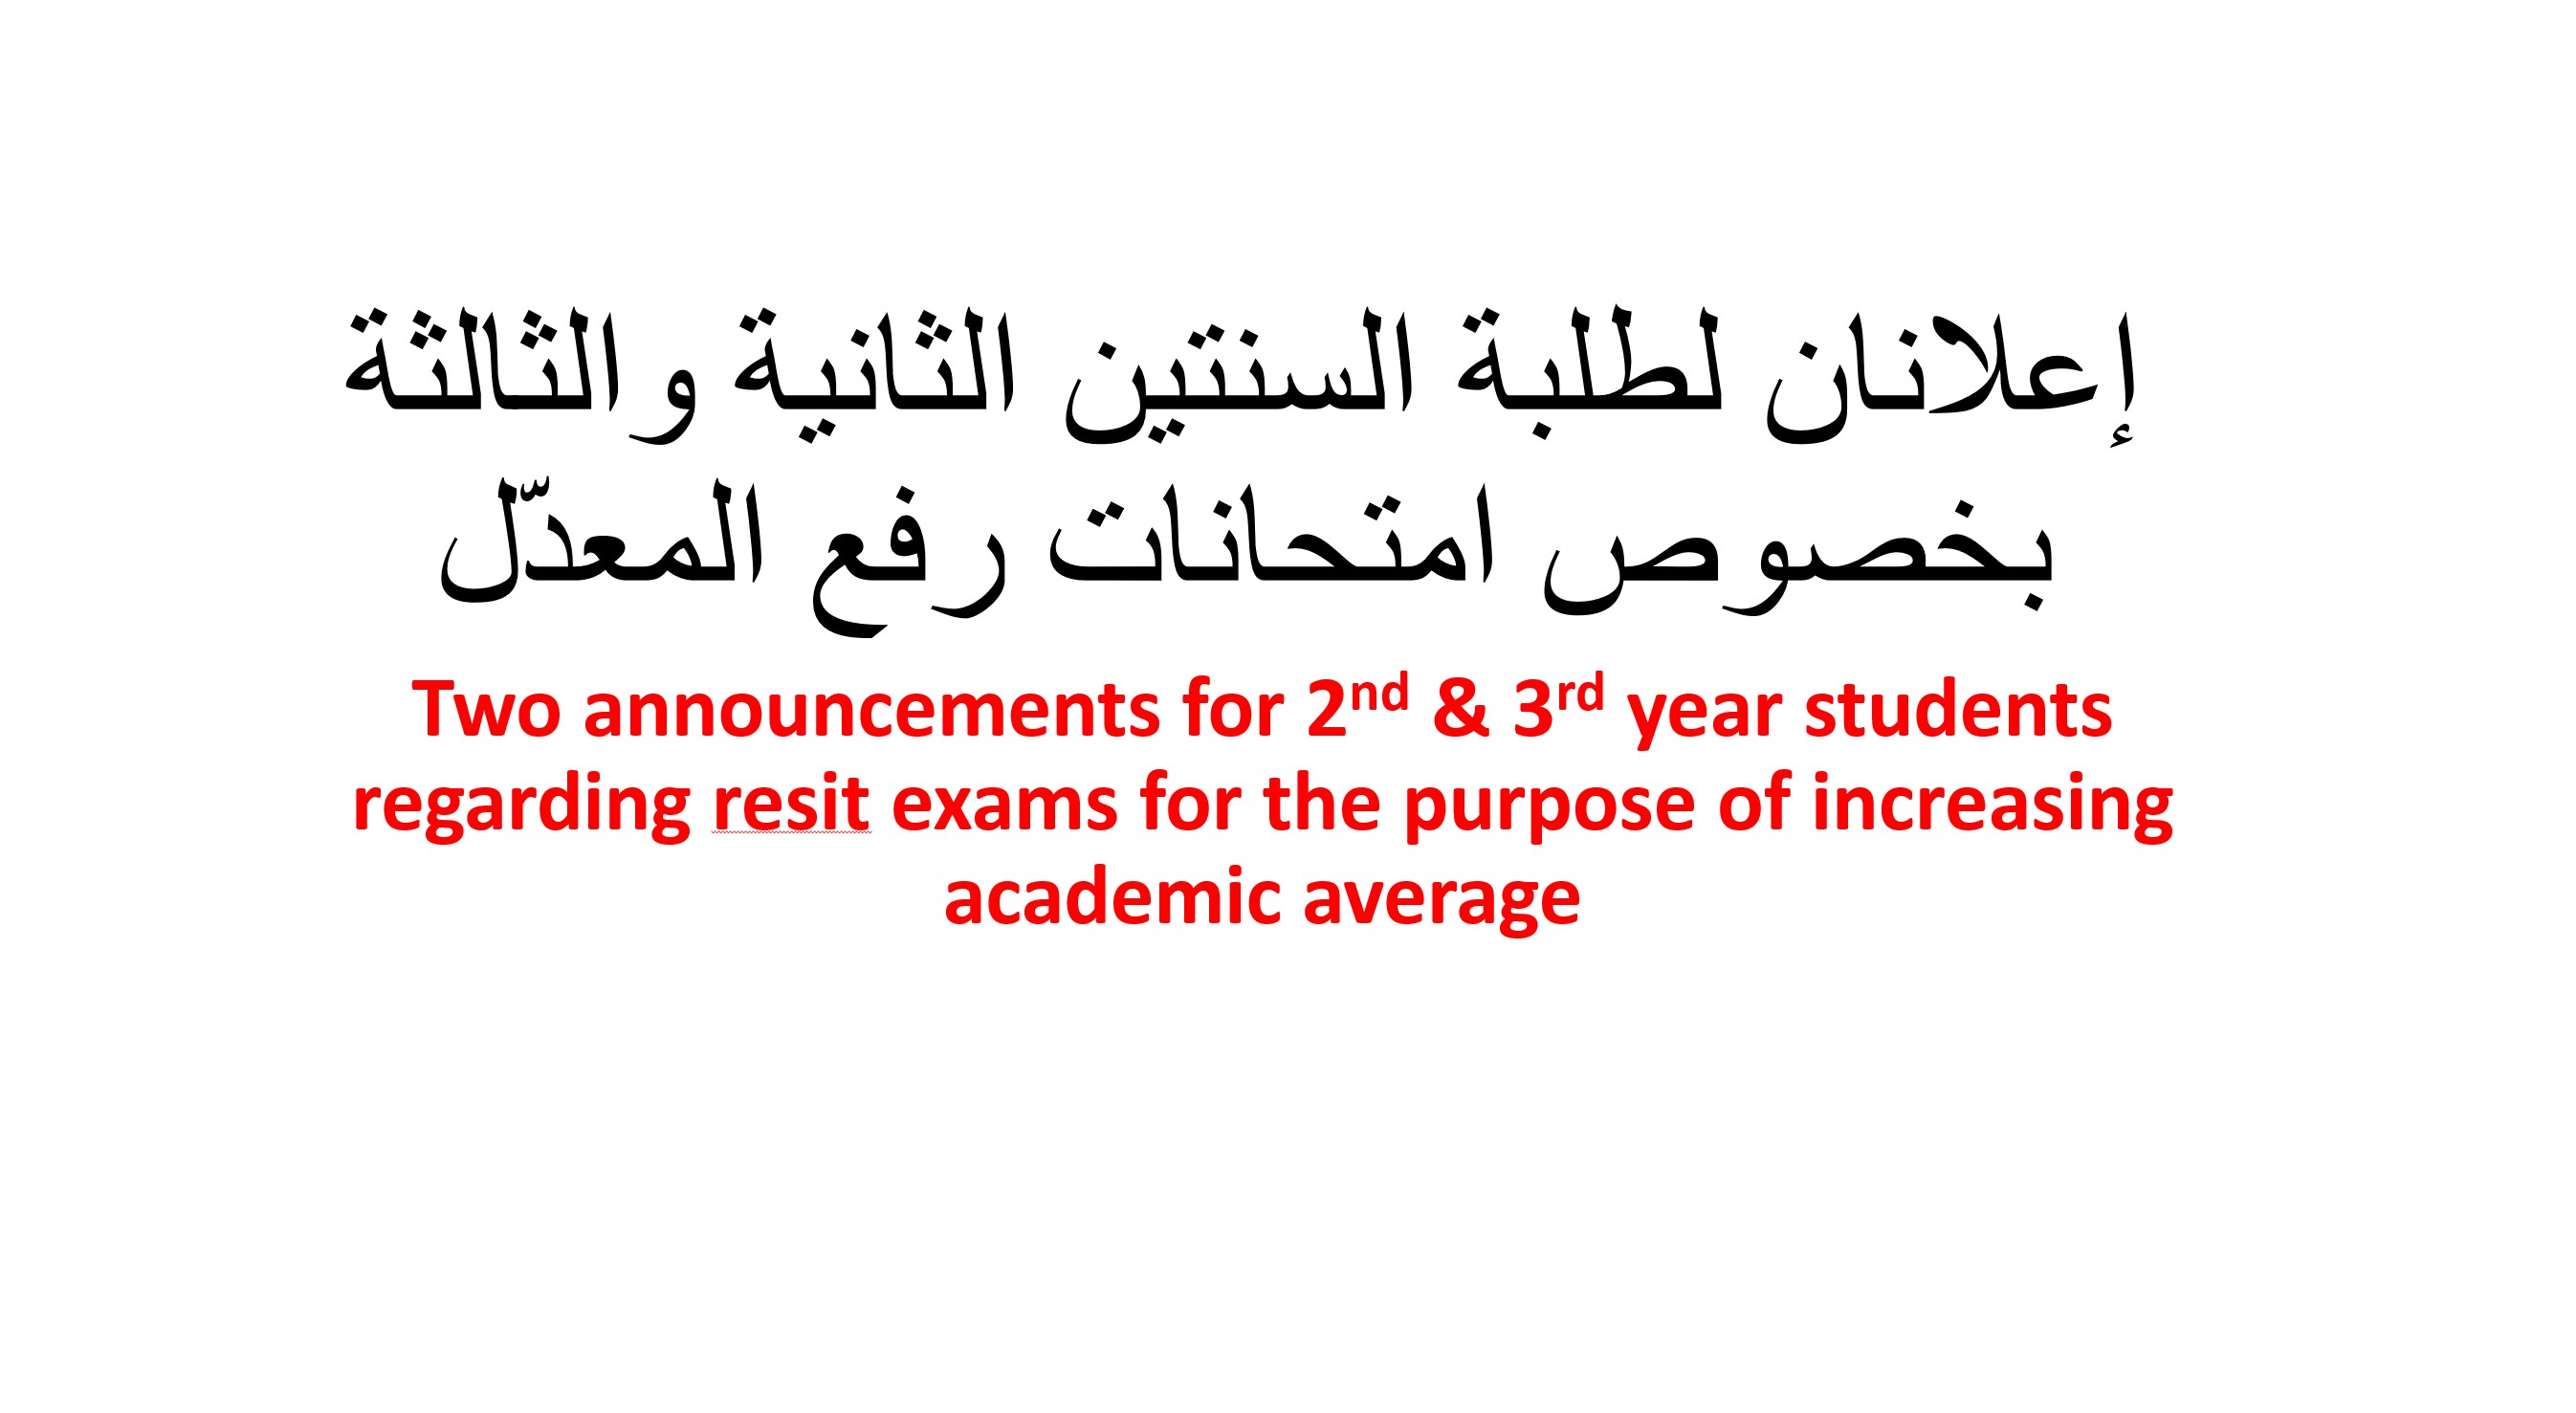 إعلانان لطلبة السنتين الثانية والثالثة بخصوص امتحانات رفع المعدّل